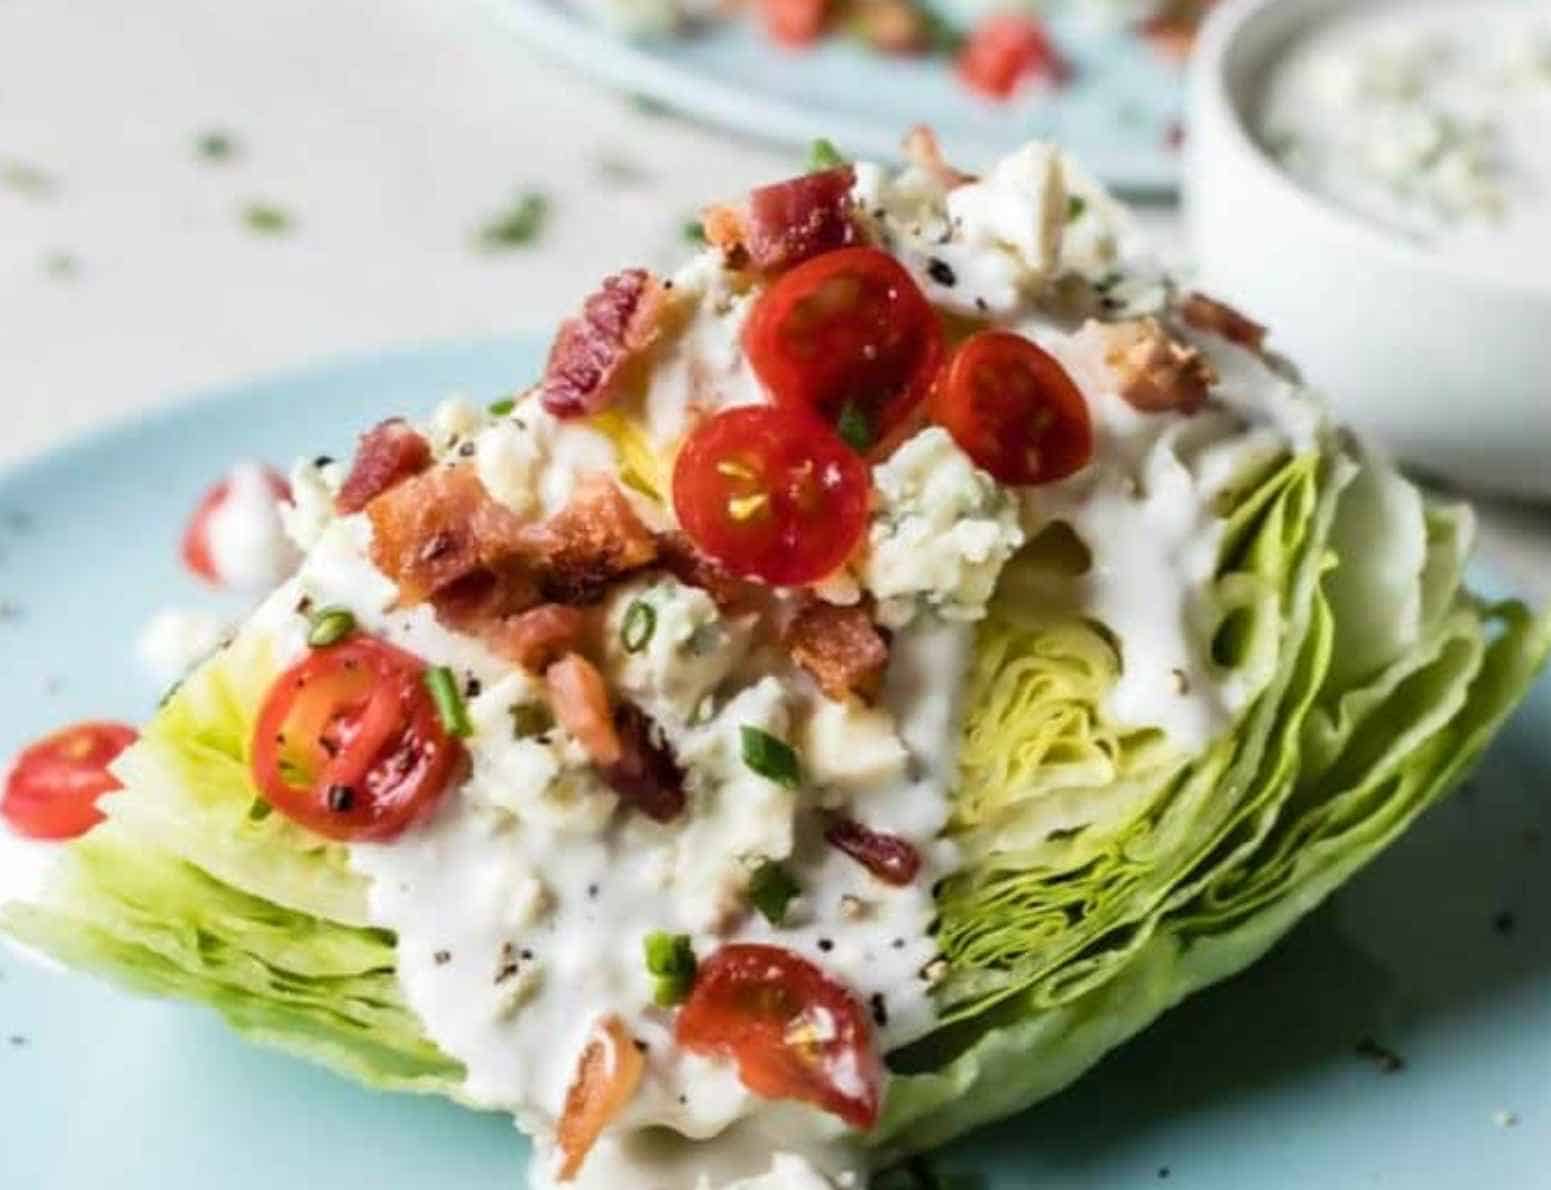 Wedge salad